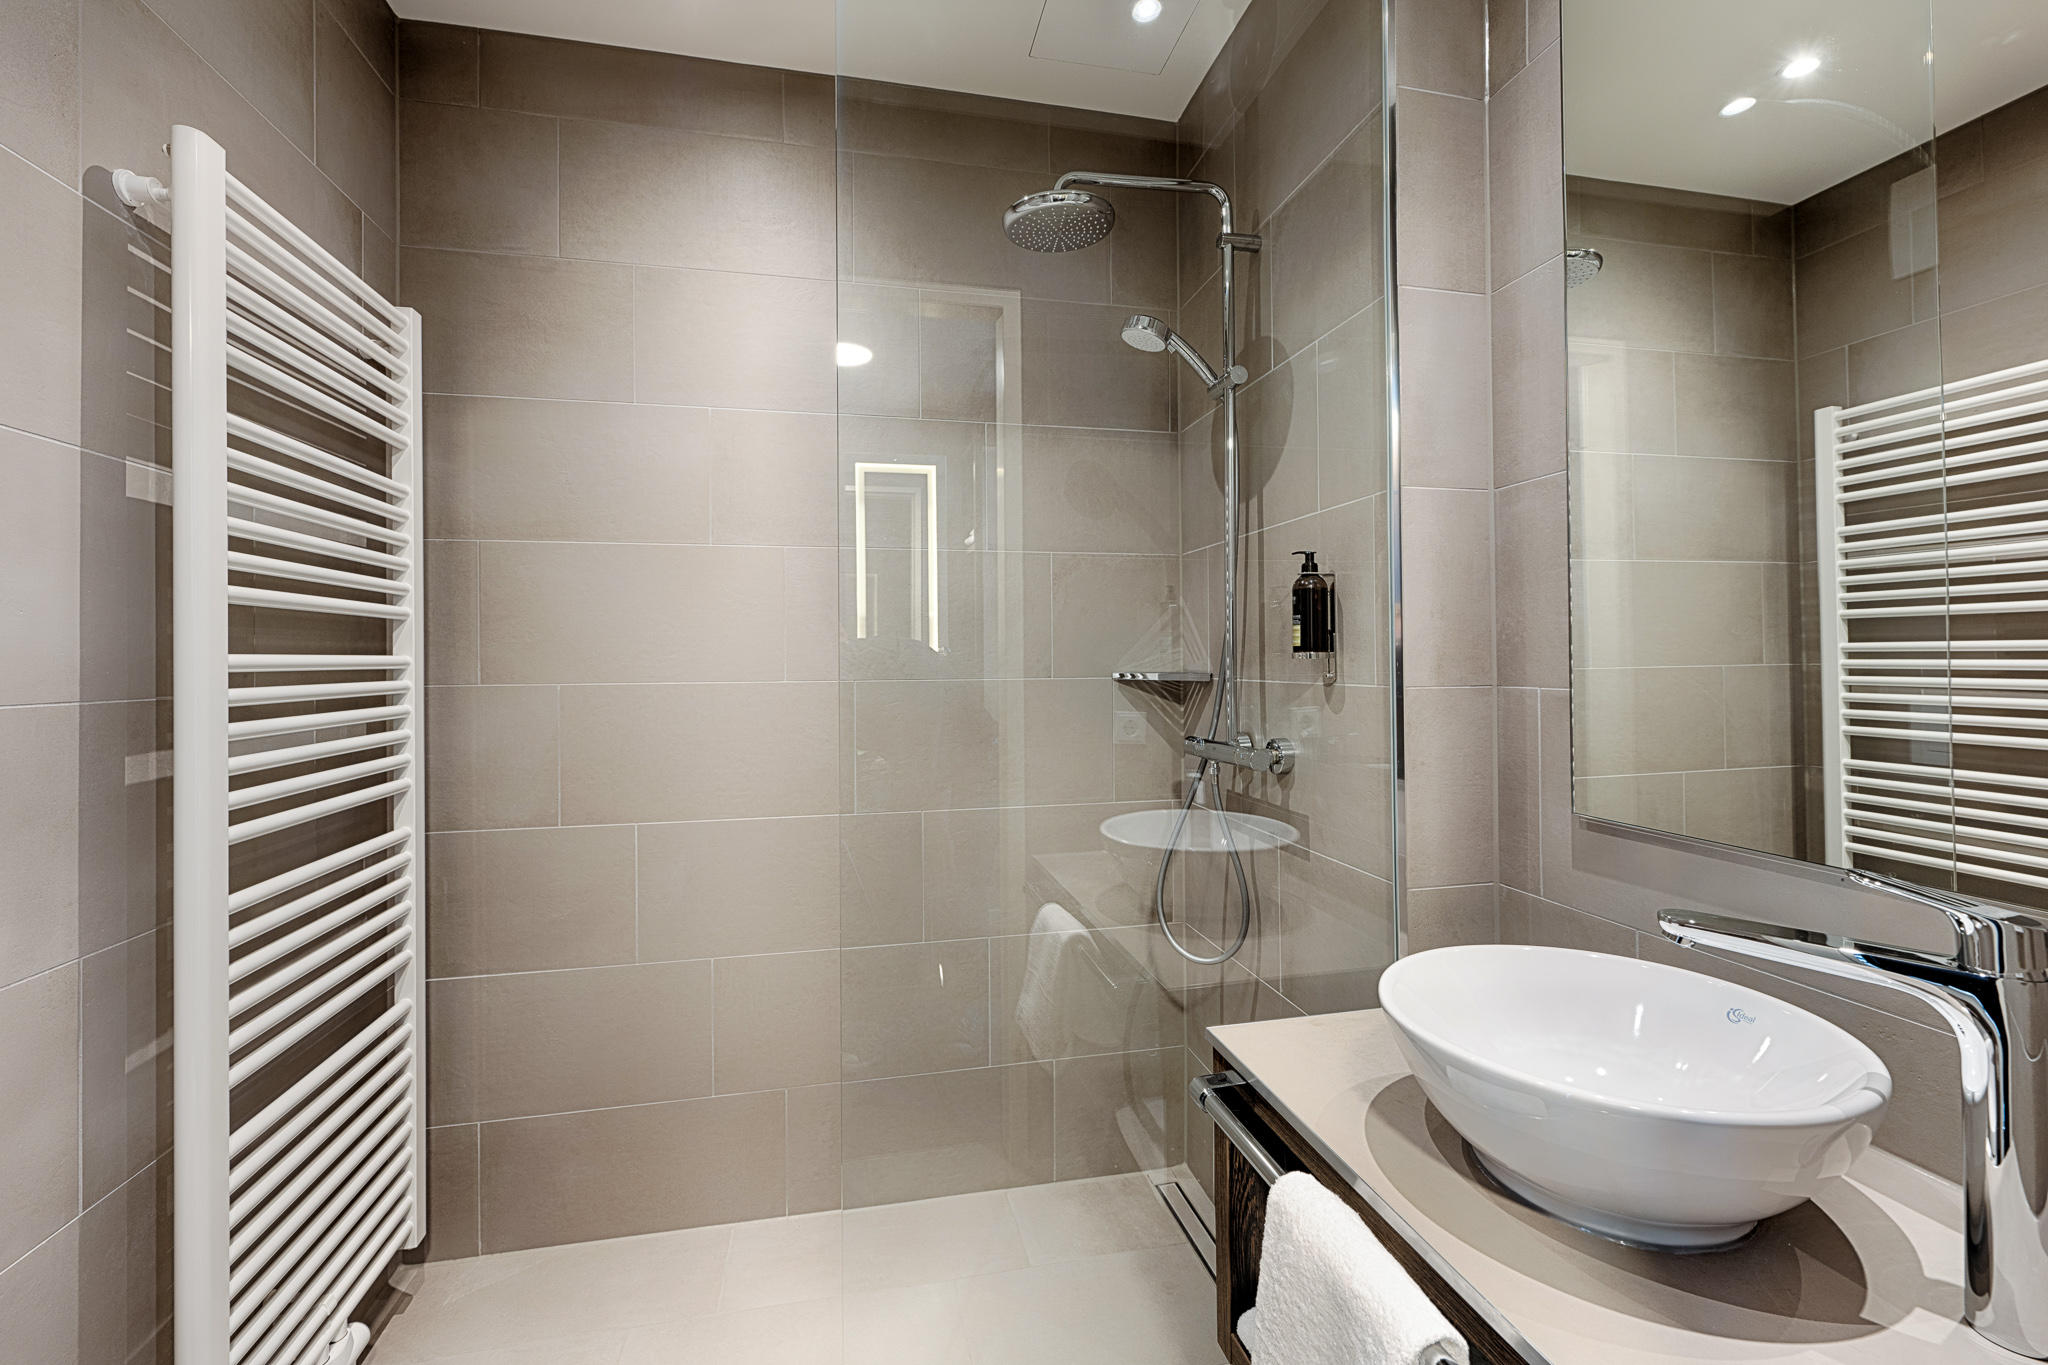 Premier Inn Wolfsburg City Centre hotel bathroom with shower